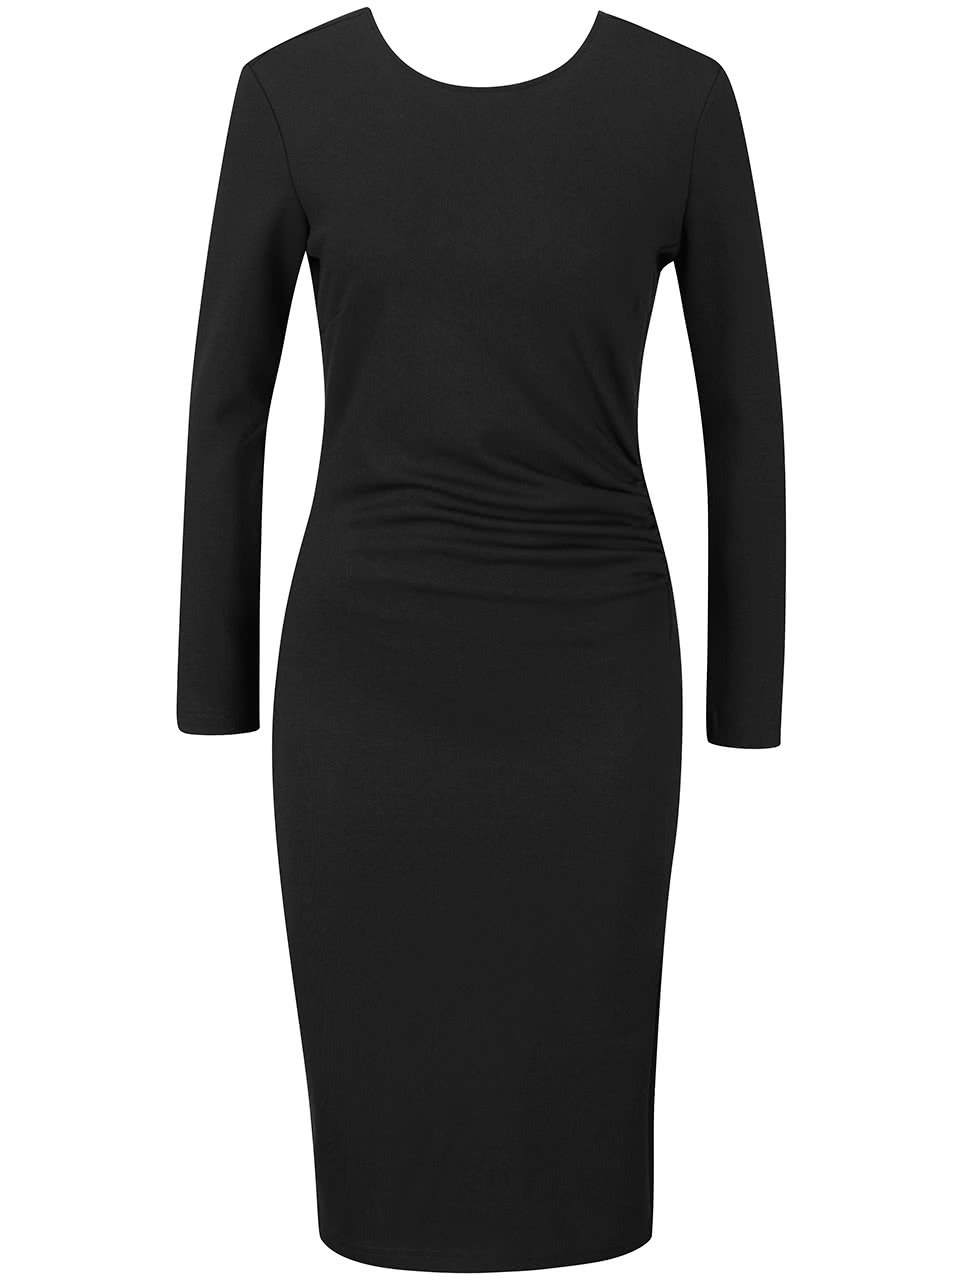 Černé šaty s dlouhým rukávem Vero Moda Mary